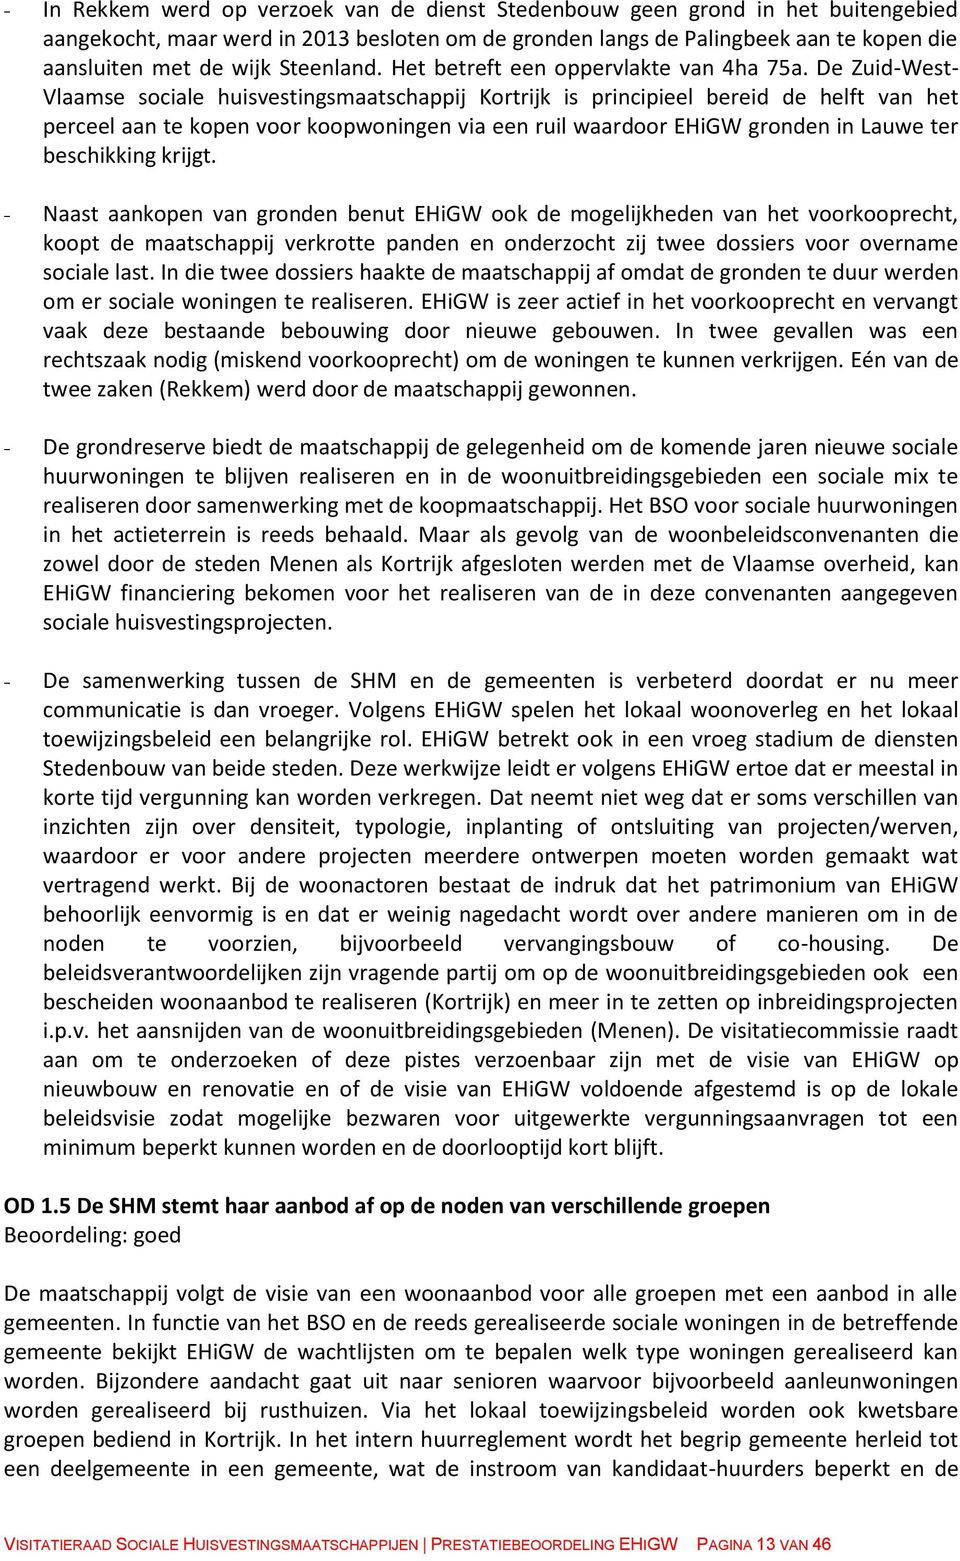 De Zuid-West- Vlaamse sociale huisvestingsmaatschappij Kortrijk is principieel bereid de helft van het perceel aan te kopen voor koopwoningen via een ruil waardoor EHiGW gronden in Lauwe ter